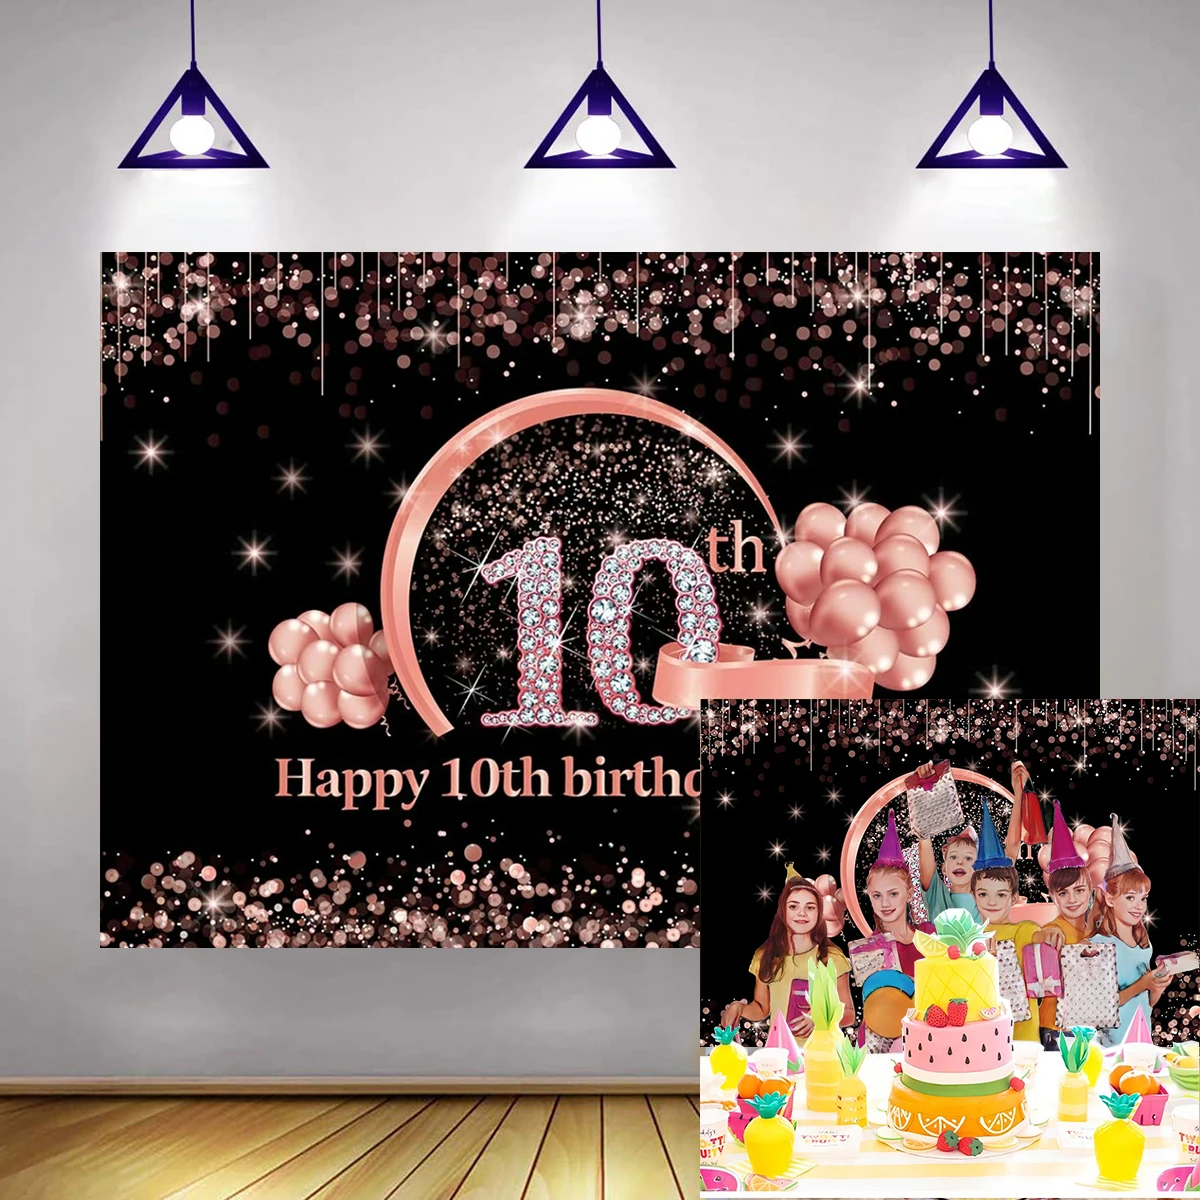 

Фон для празднования 10-го дня рождения из розовой желтой ткани декорация для фотосъемки воздушные шары фотосъемка баннер фон